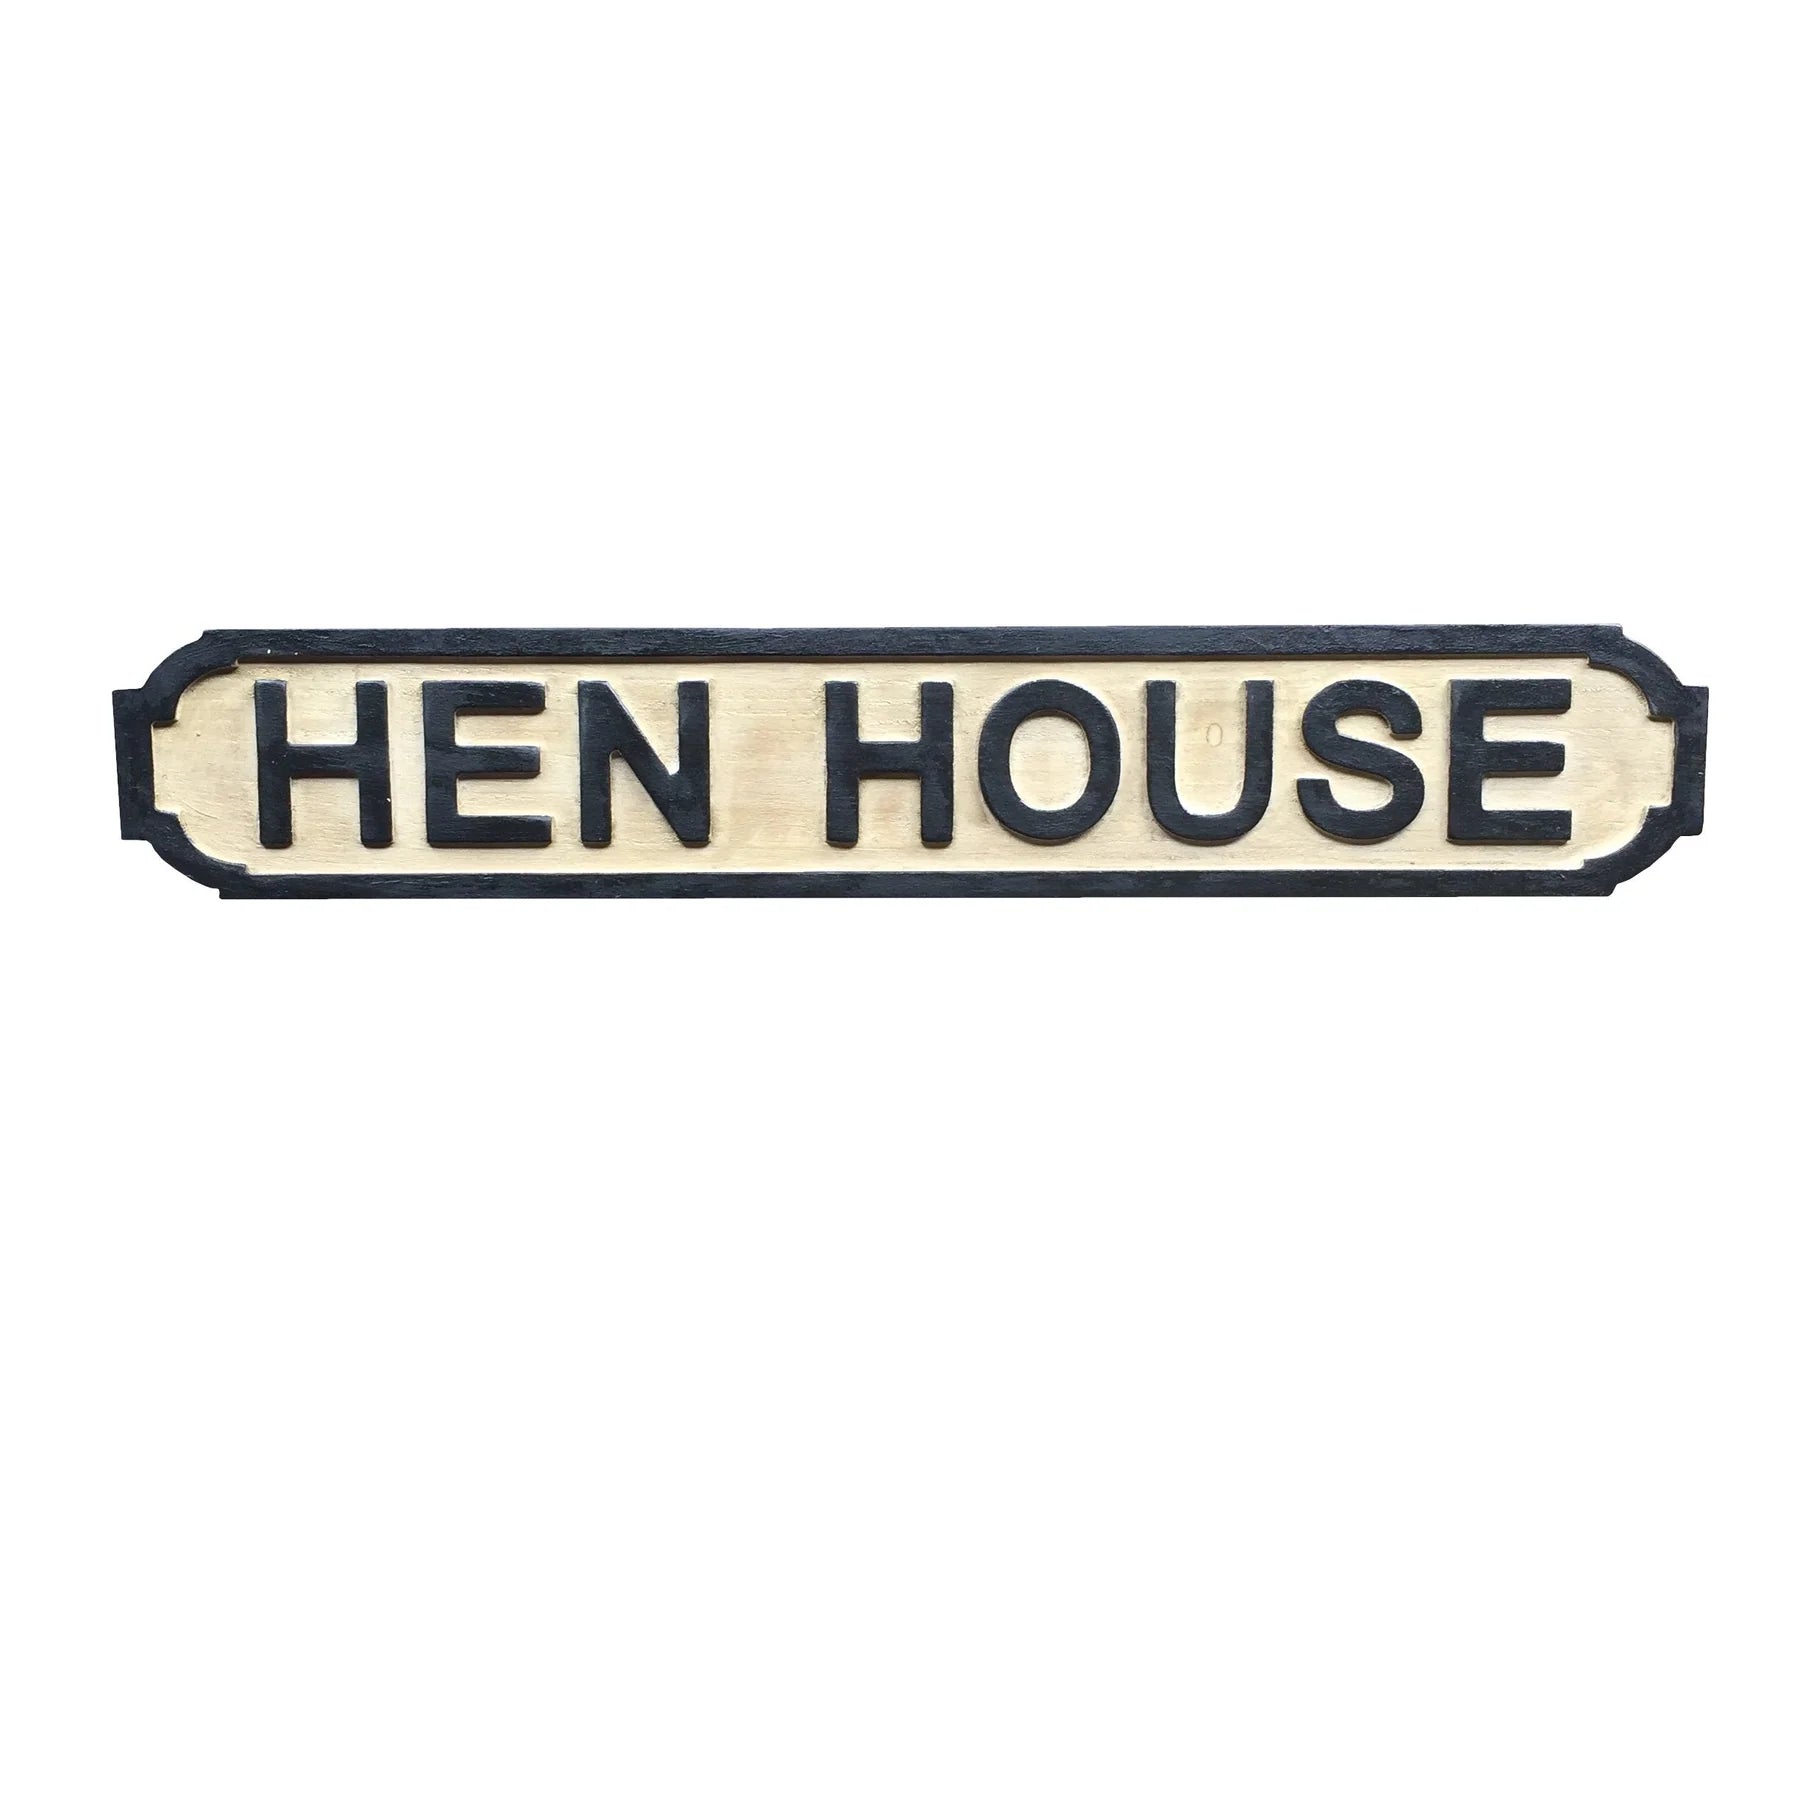 Sign - Hen House